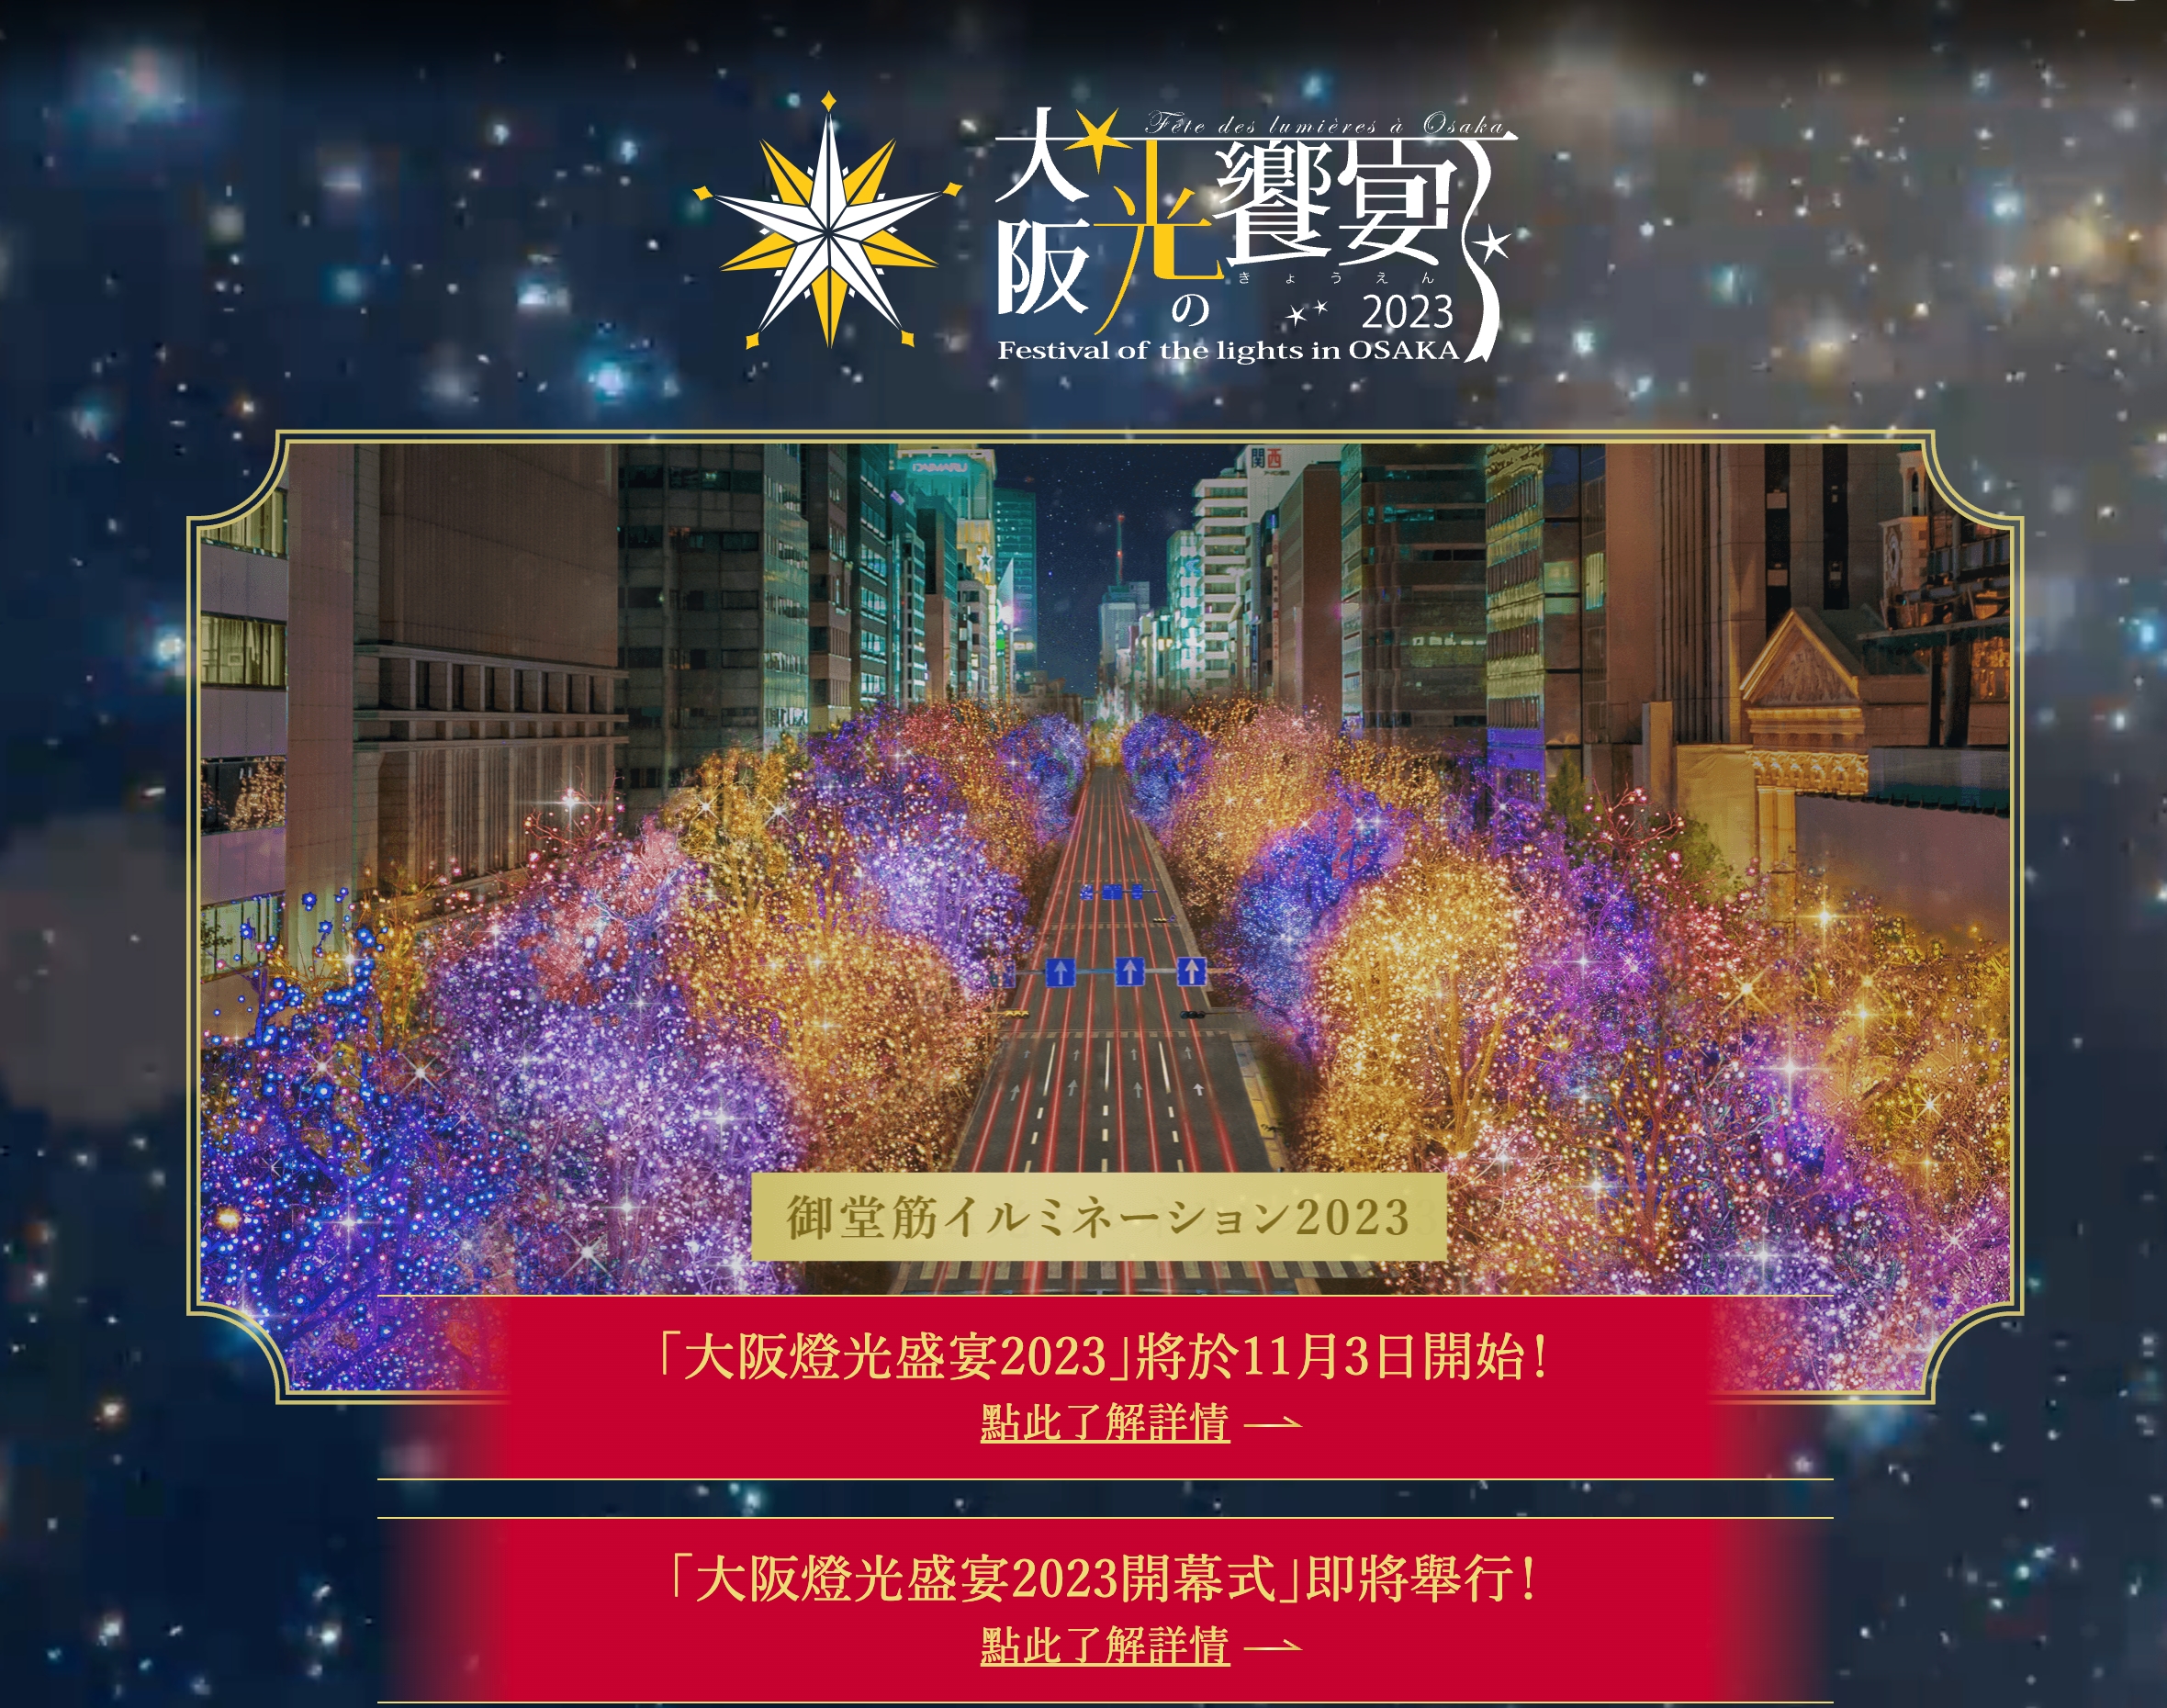 【2023日本大阪聖誕節】大阪光之饗宴文藝復興,御堂筋彩燈節,璀璨街景好夢幻!